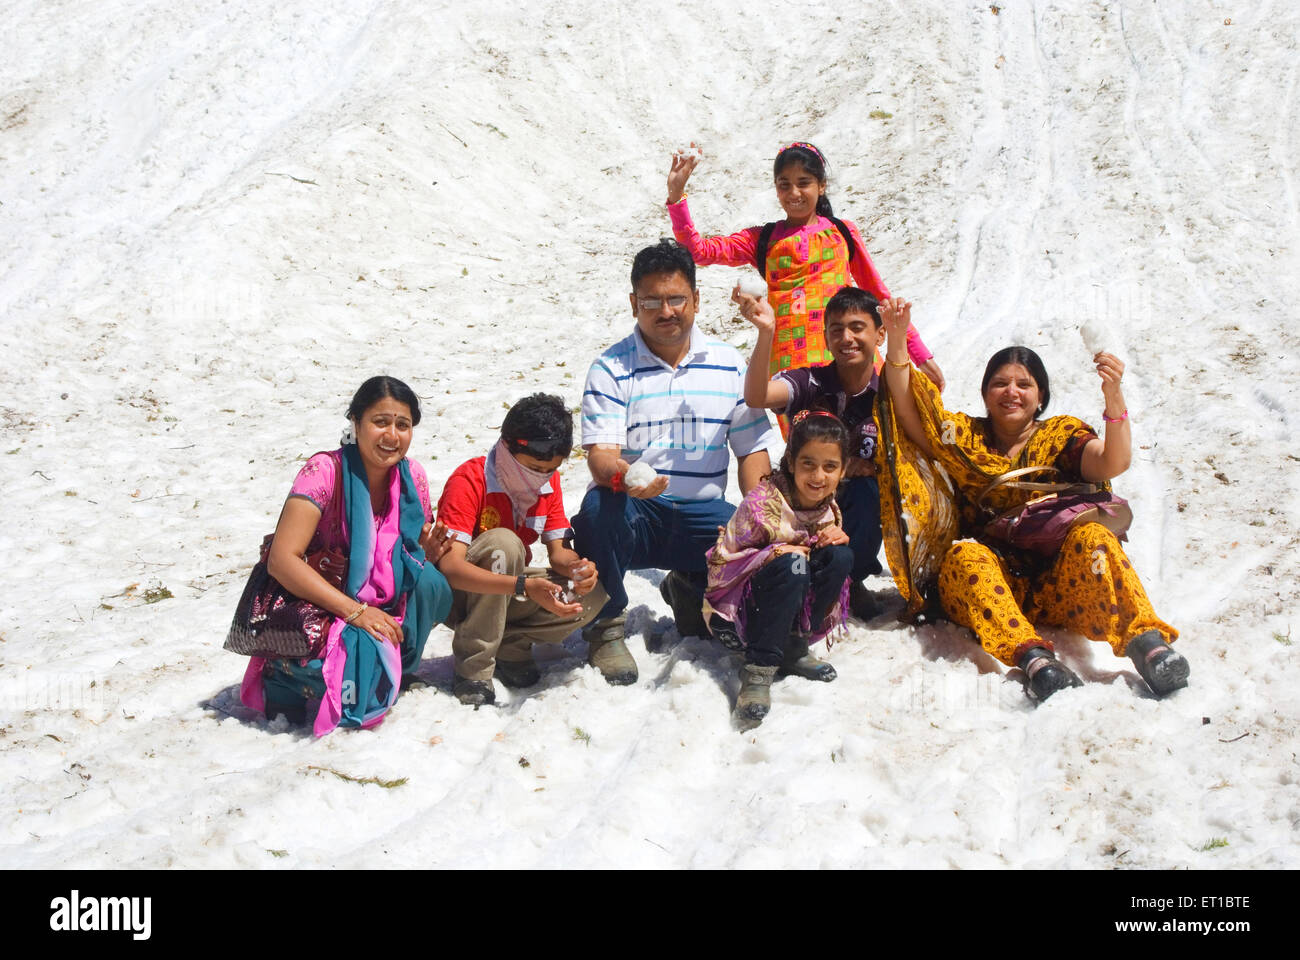 Ein Touristen-Familie genießen auf verschneiten Boden Chandanvaadi Jammu und Kaschmir Indien Asien Herr #704 Stockfoto